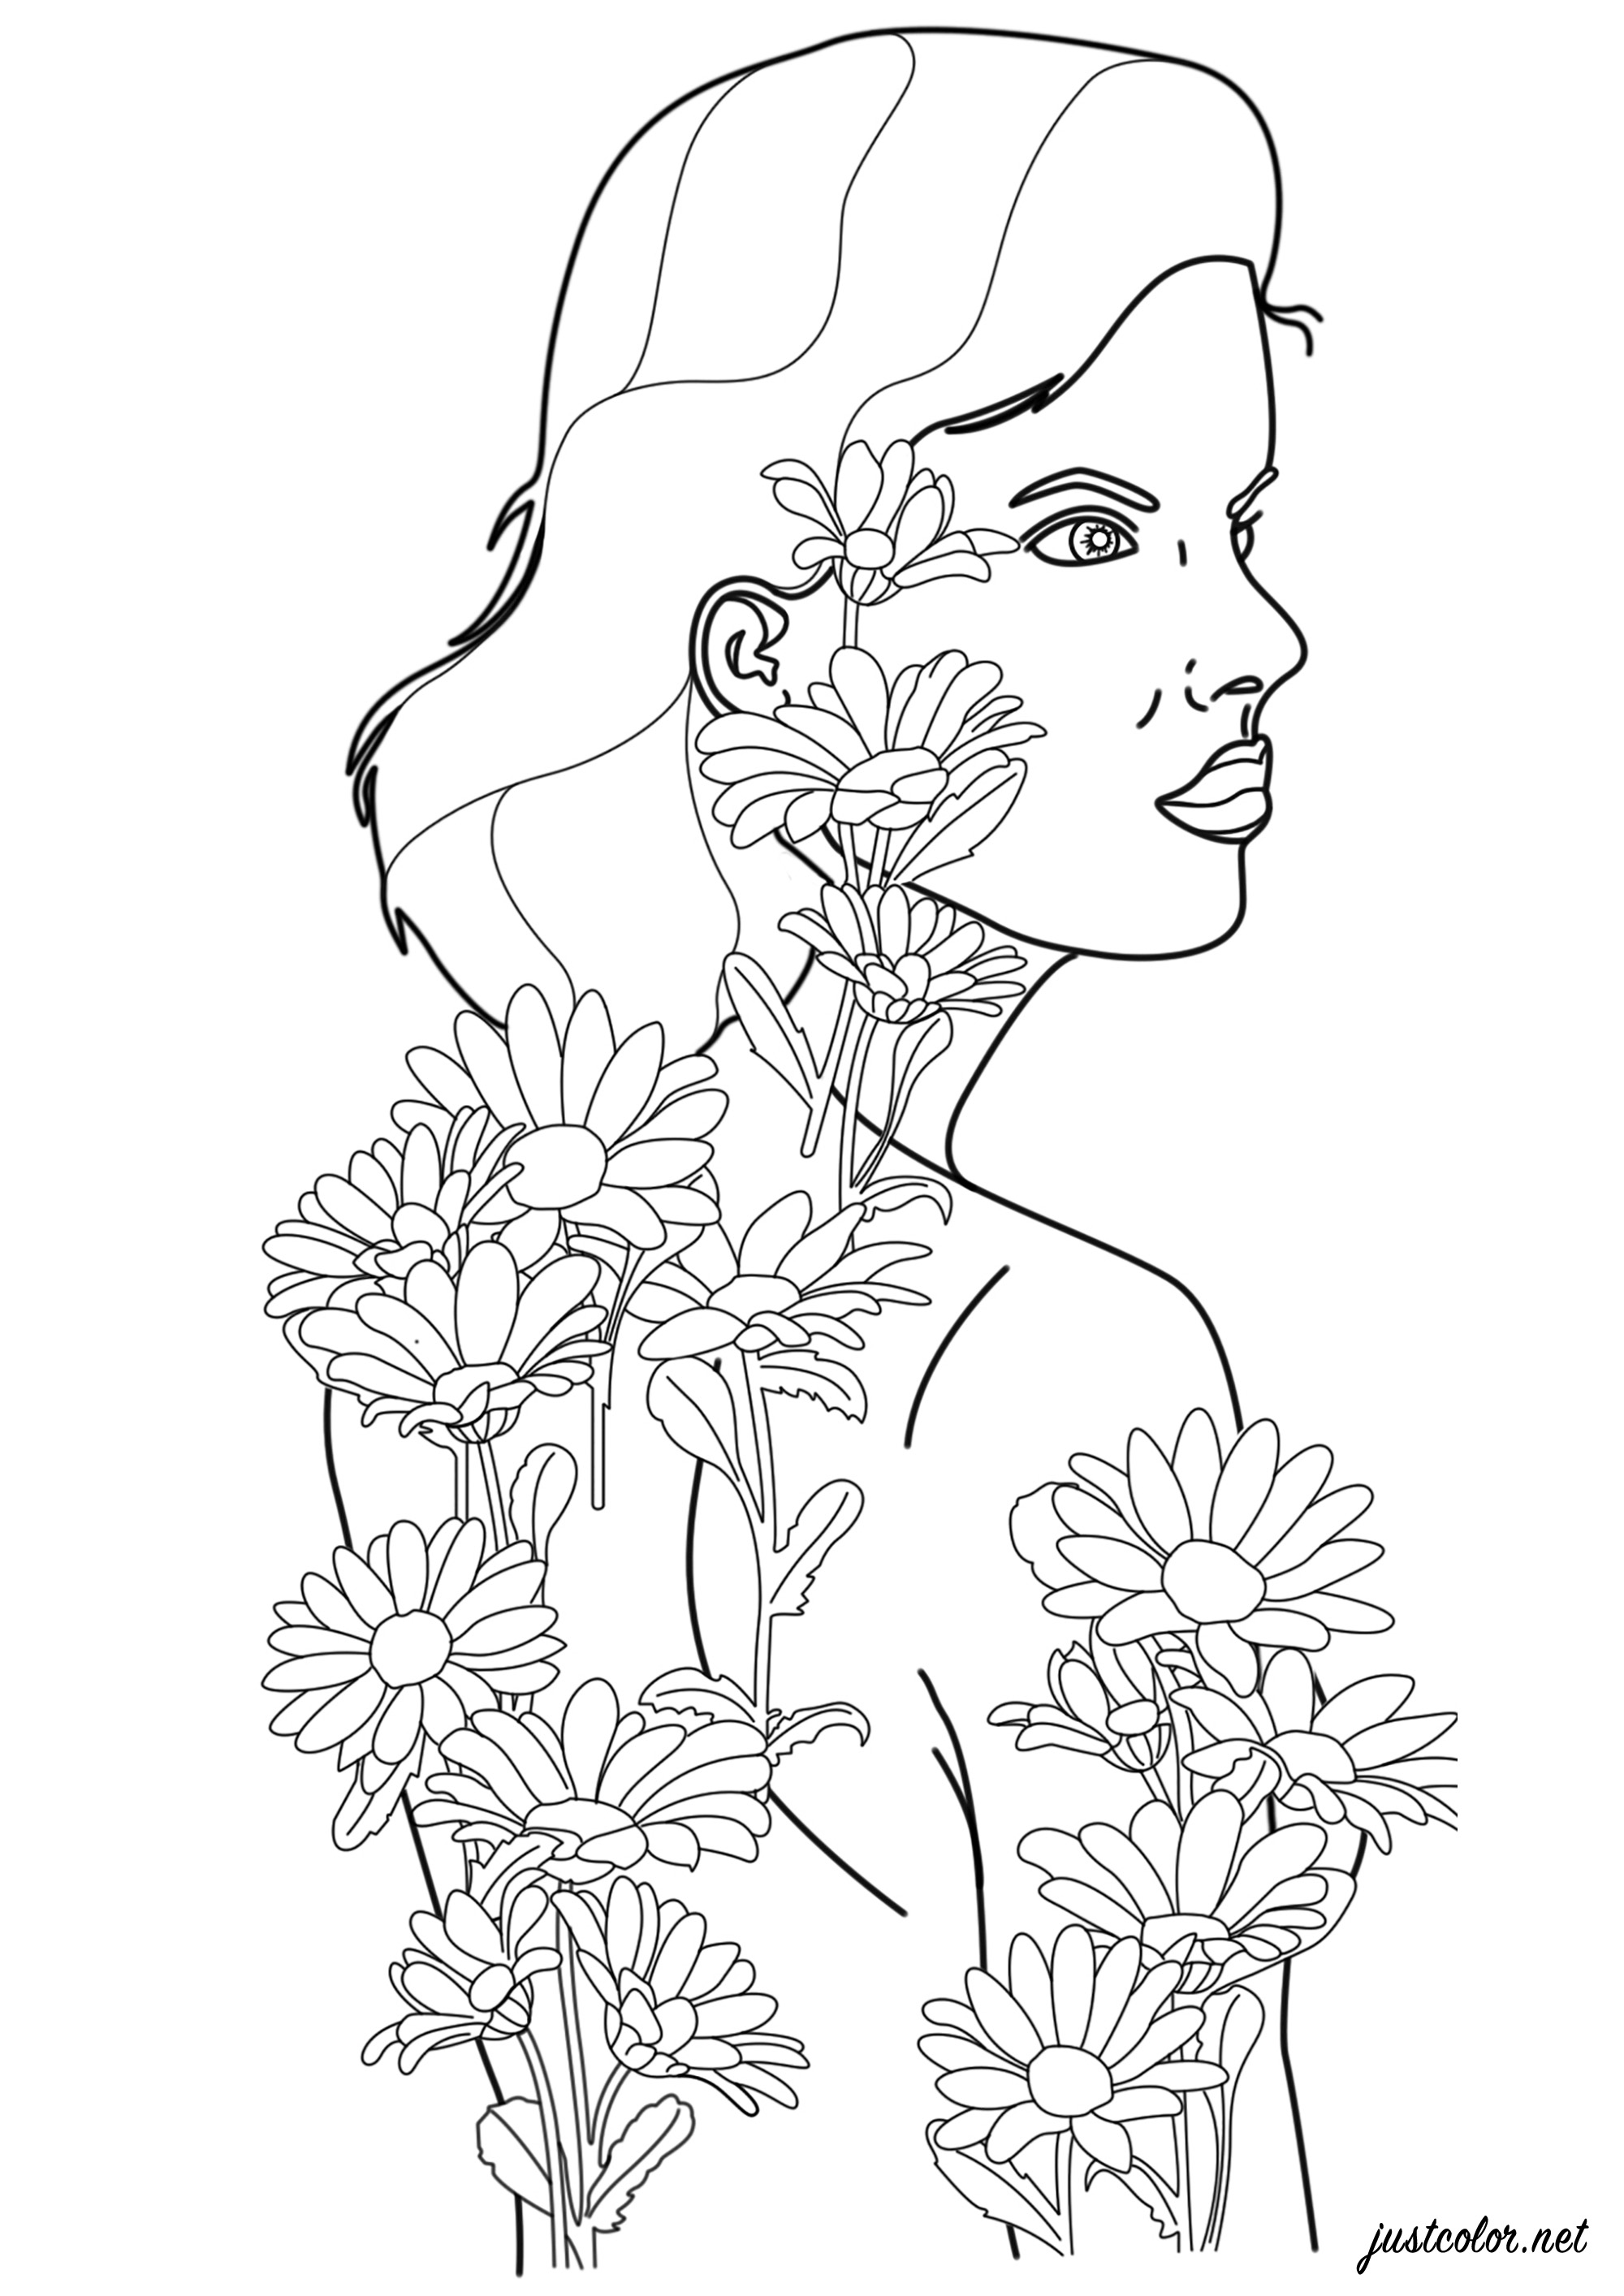 Donna con tatuaggi di fiori che prendono vita e diventano reali